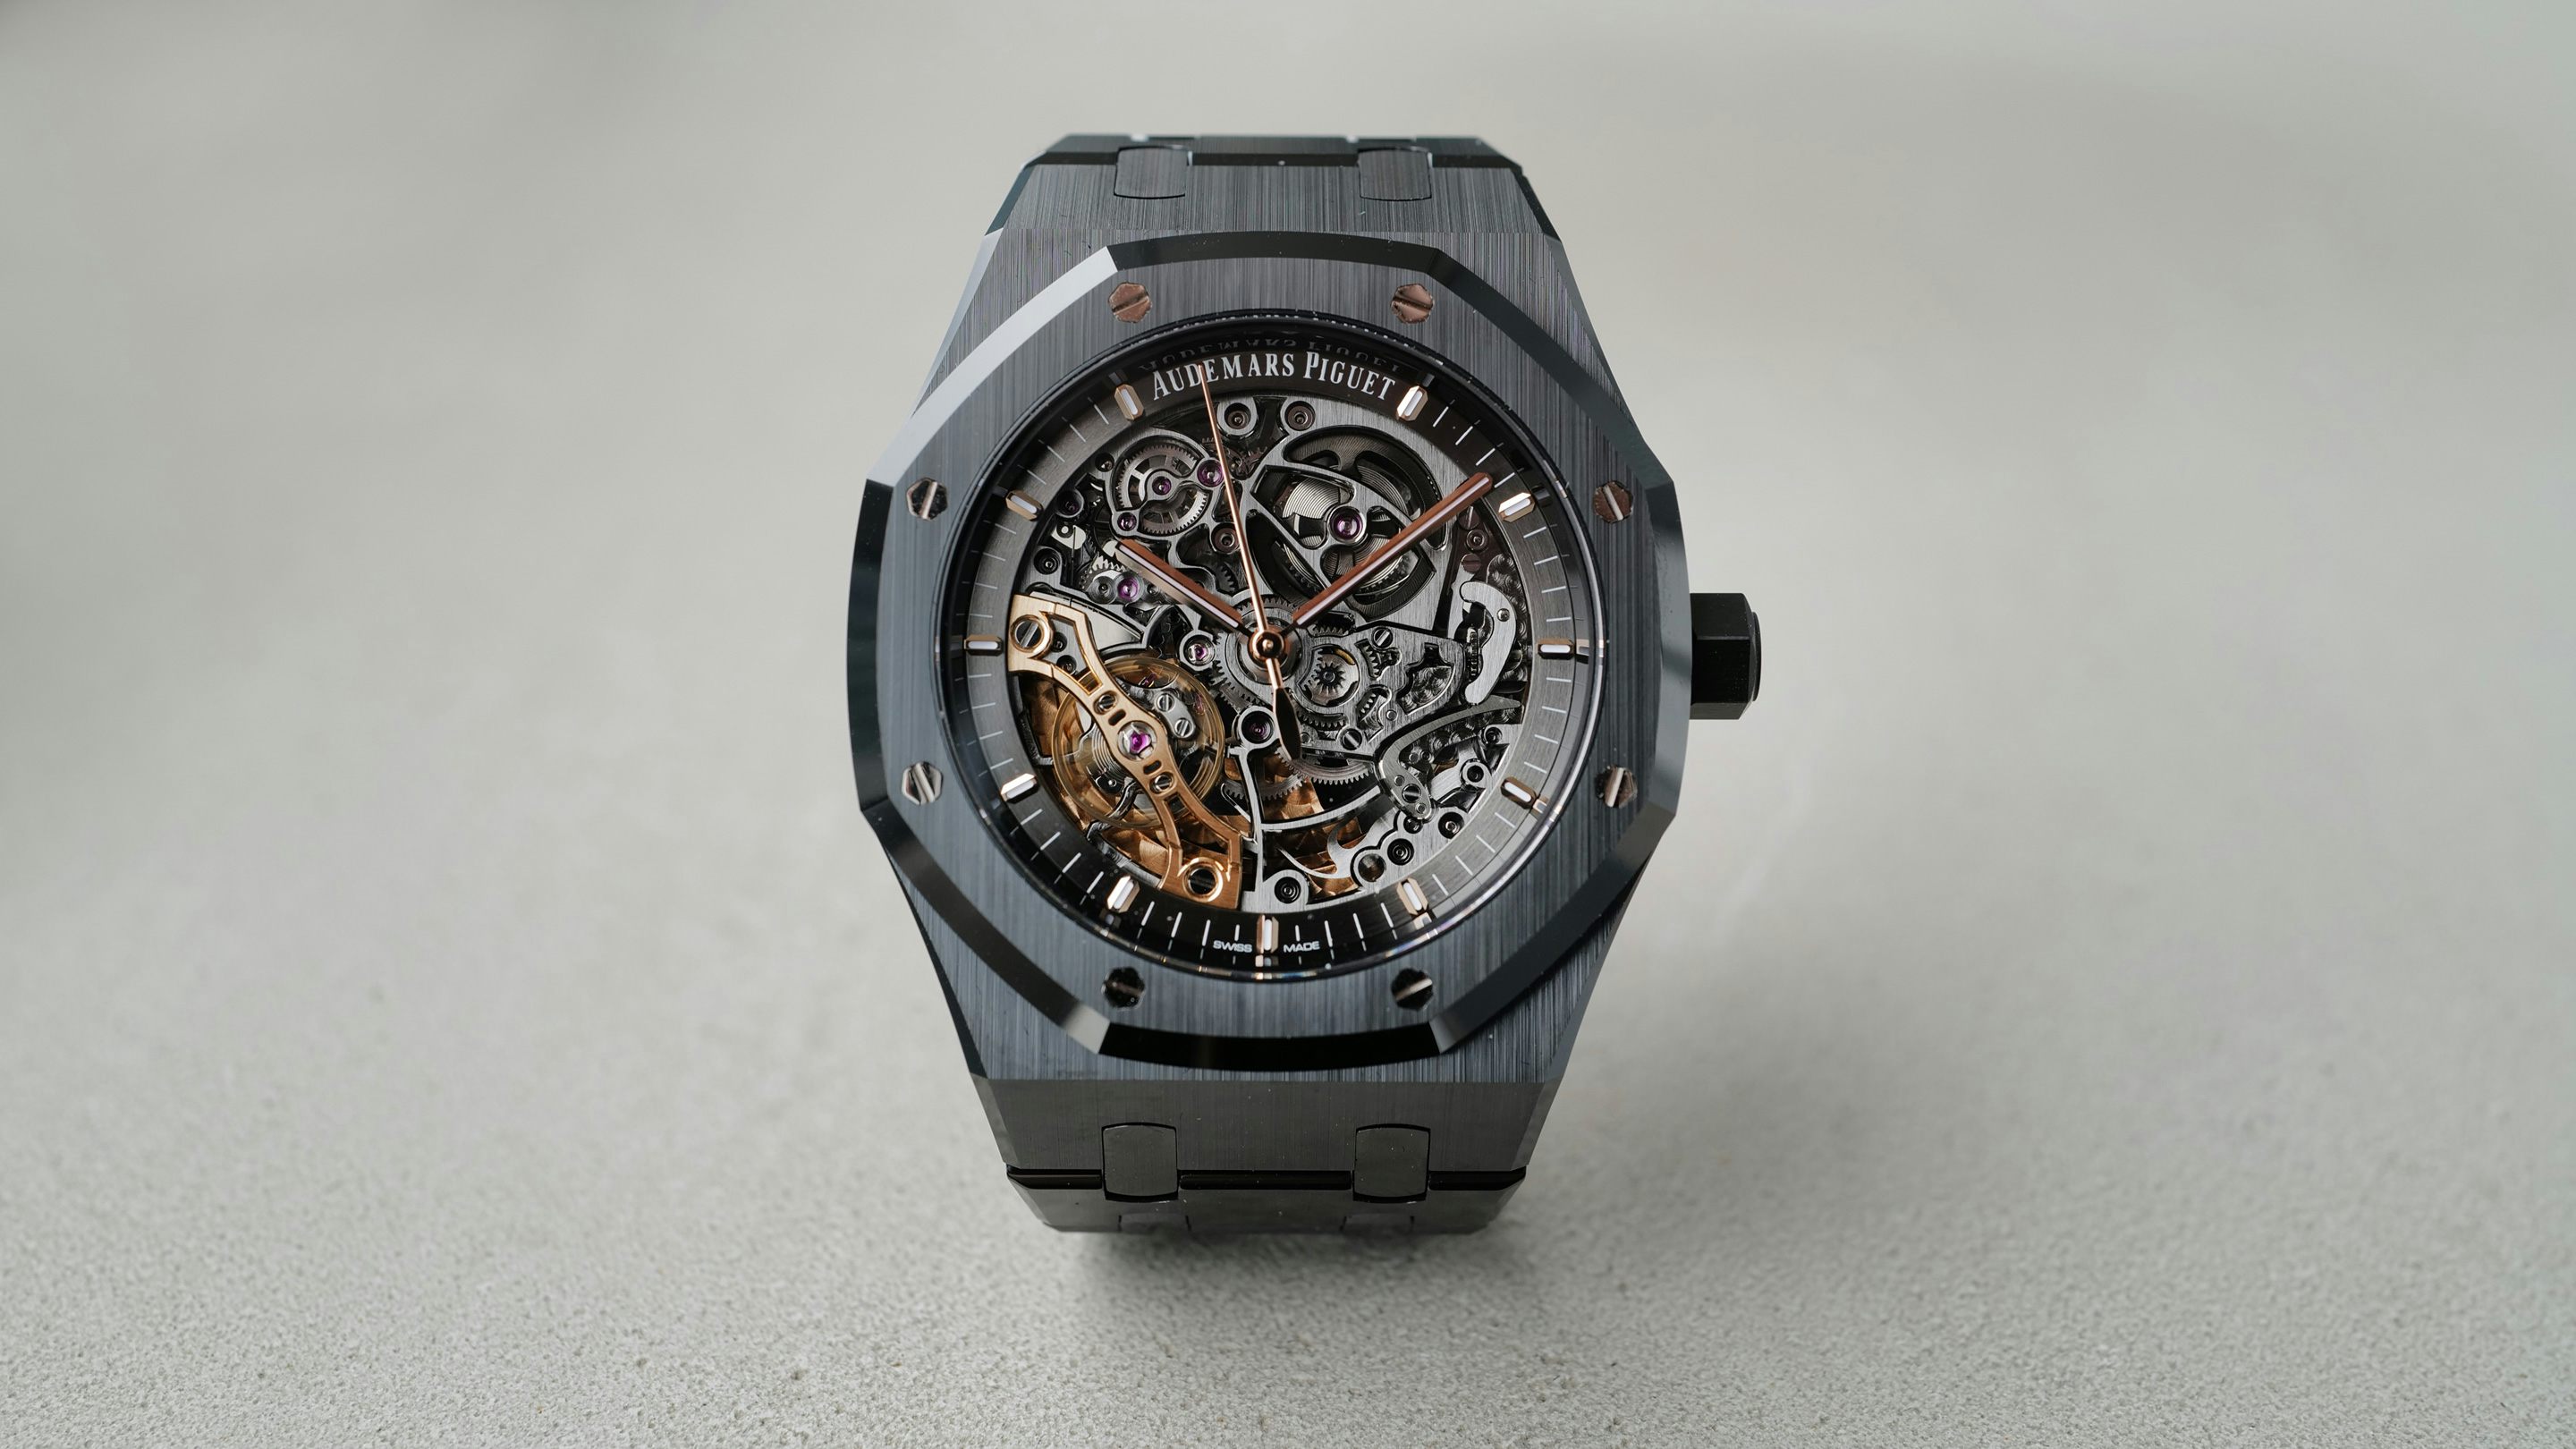 Watches — Rolex, Richard Mille, Audemar Piguet, Zenith, Patek Philippe